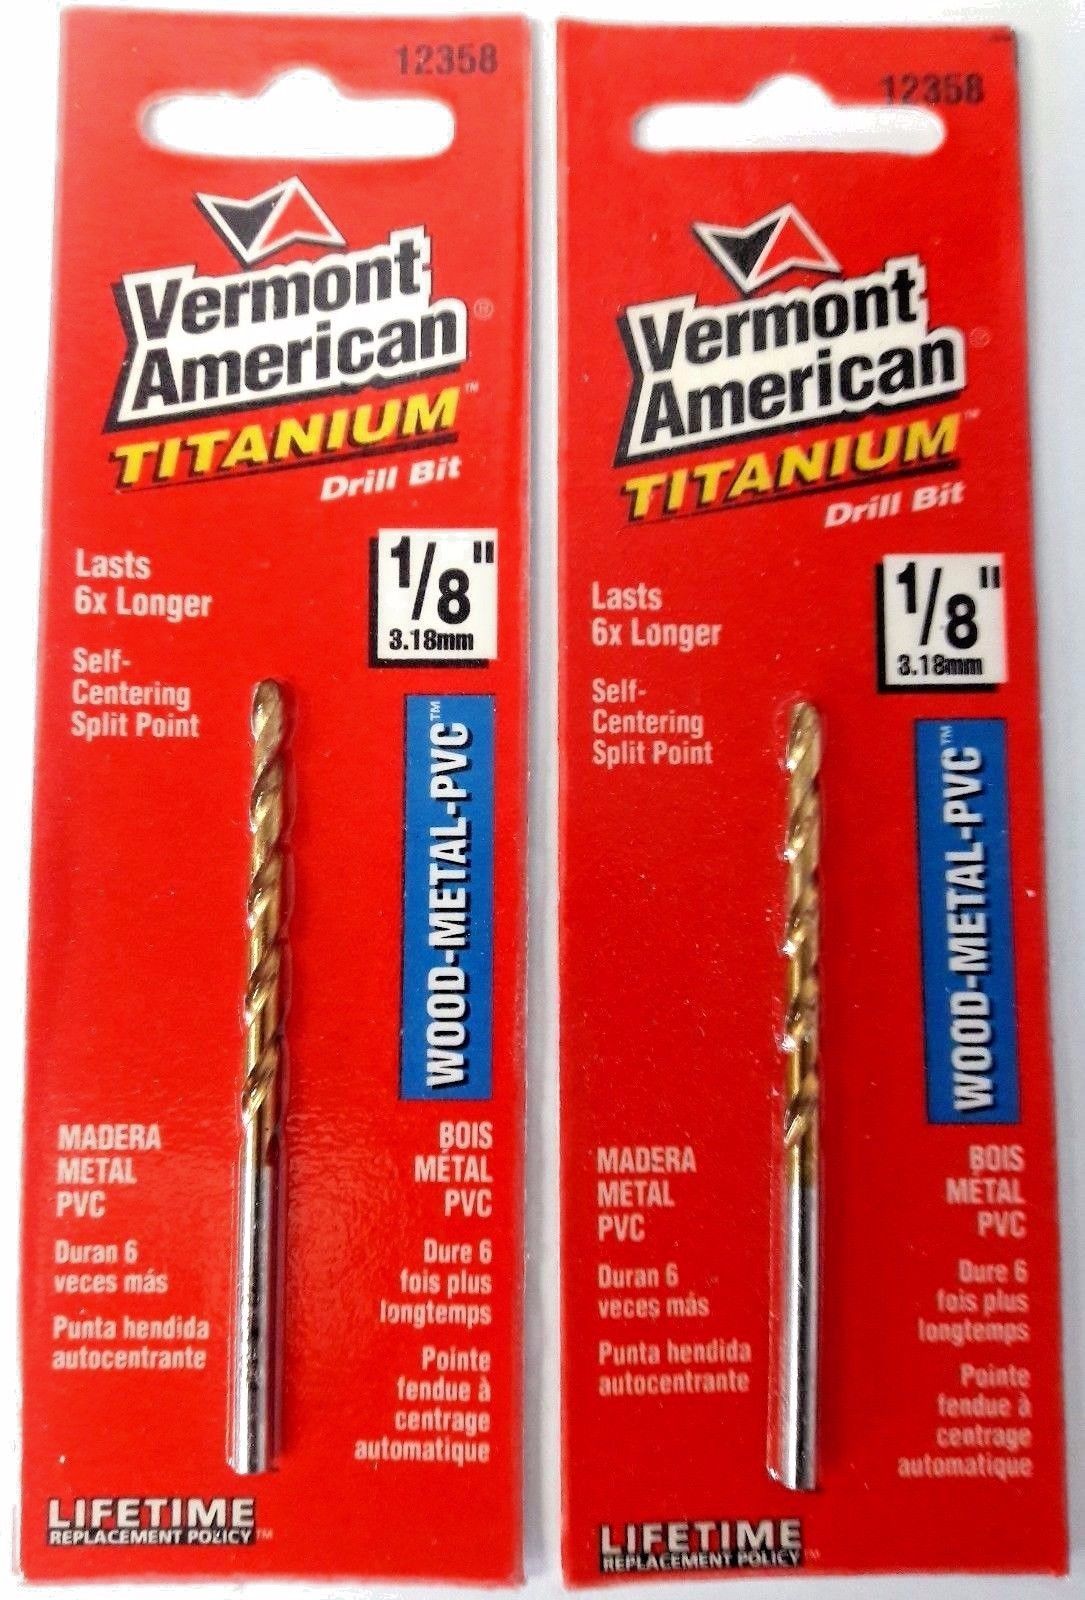 Vermont American 12358 1/8" Titanium Drill Bit 2PKS